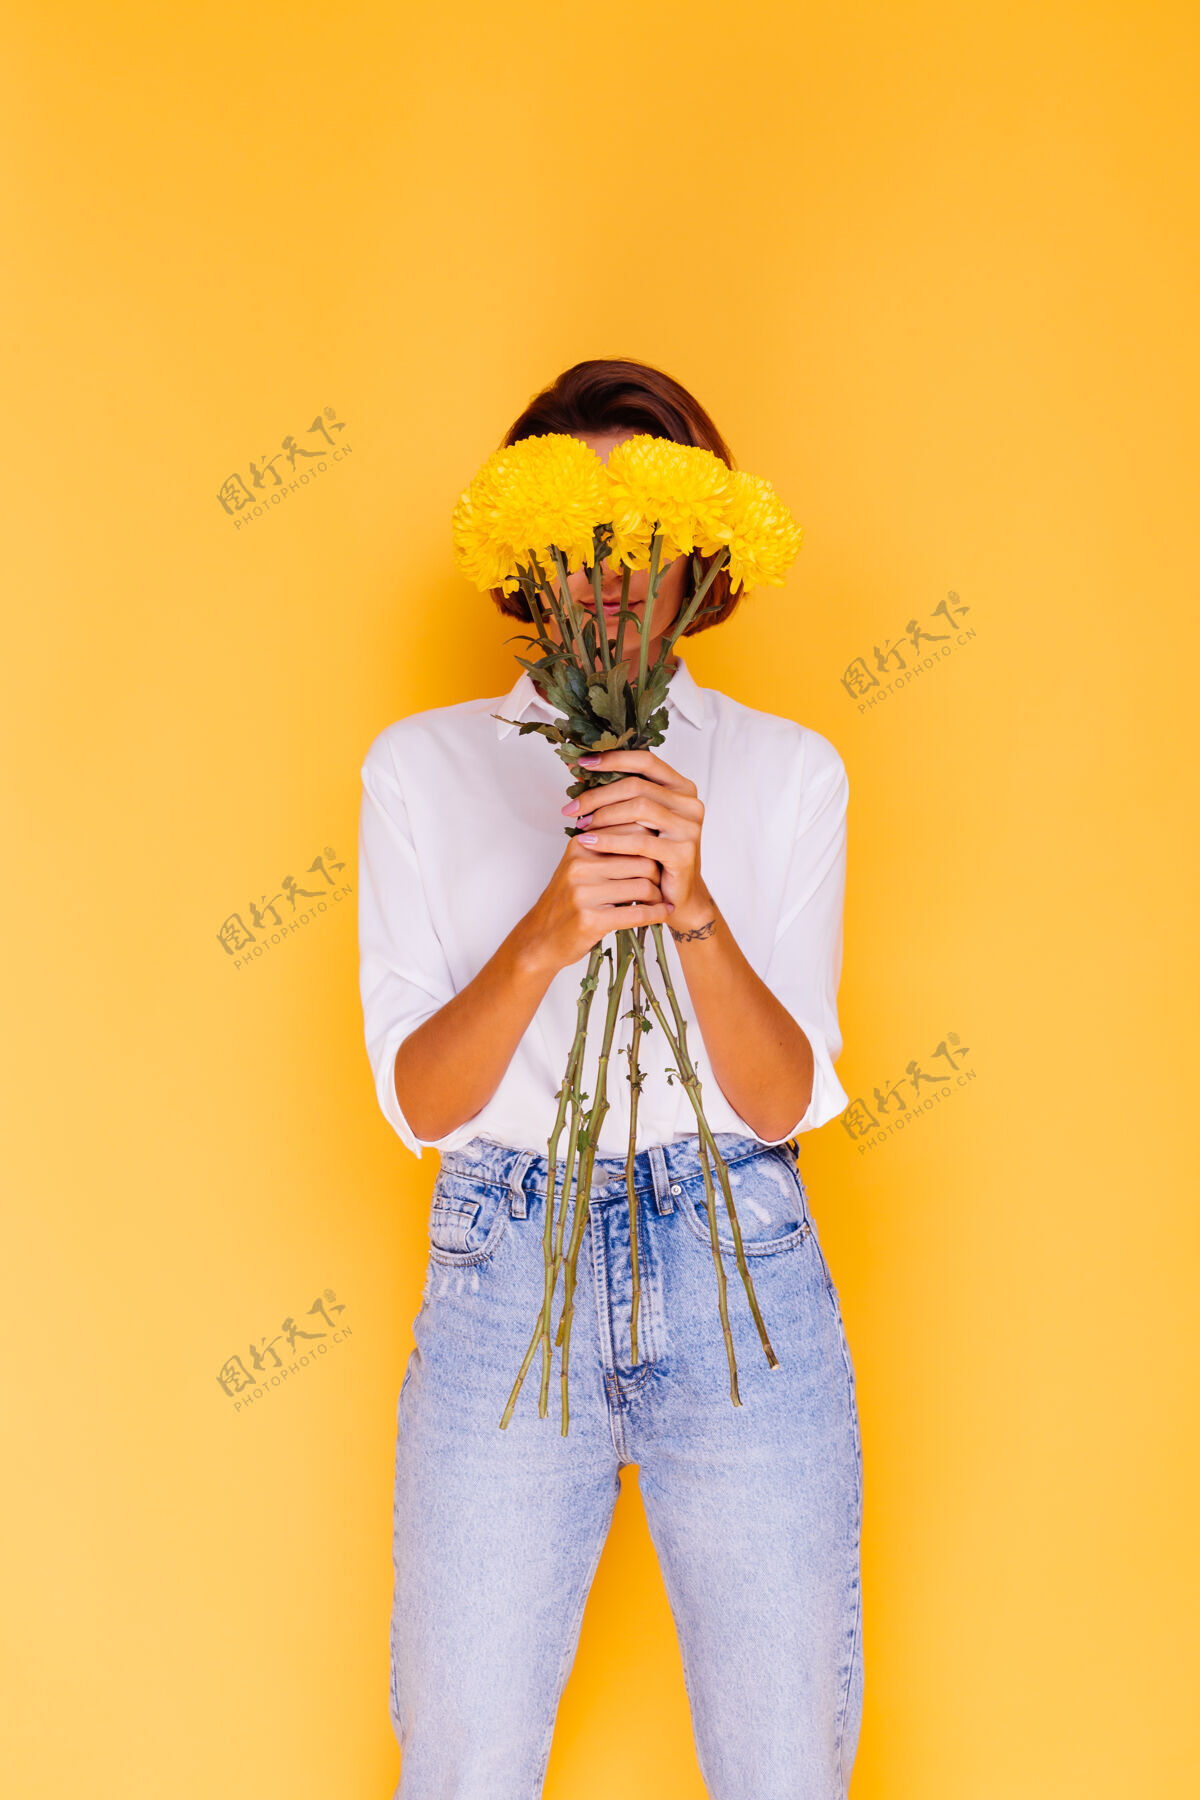 年轻摄影棚拍摄的黄色背景快乐的白人妇女短发穿着休闲服白衬衫和牛仔裤手持一束黄色紫苑气味积极可爱